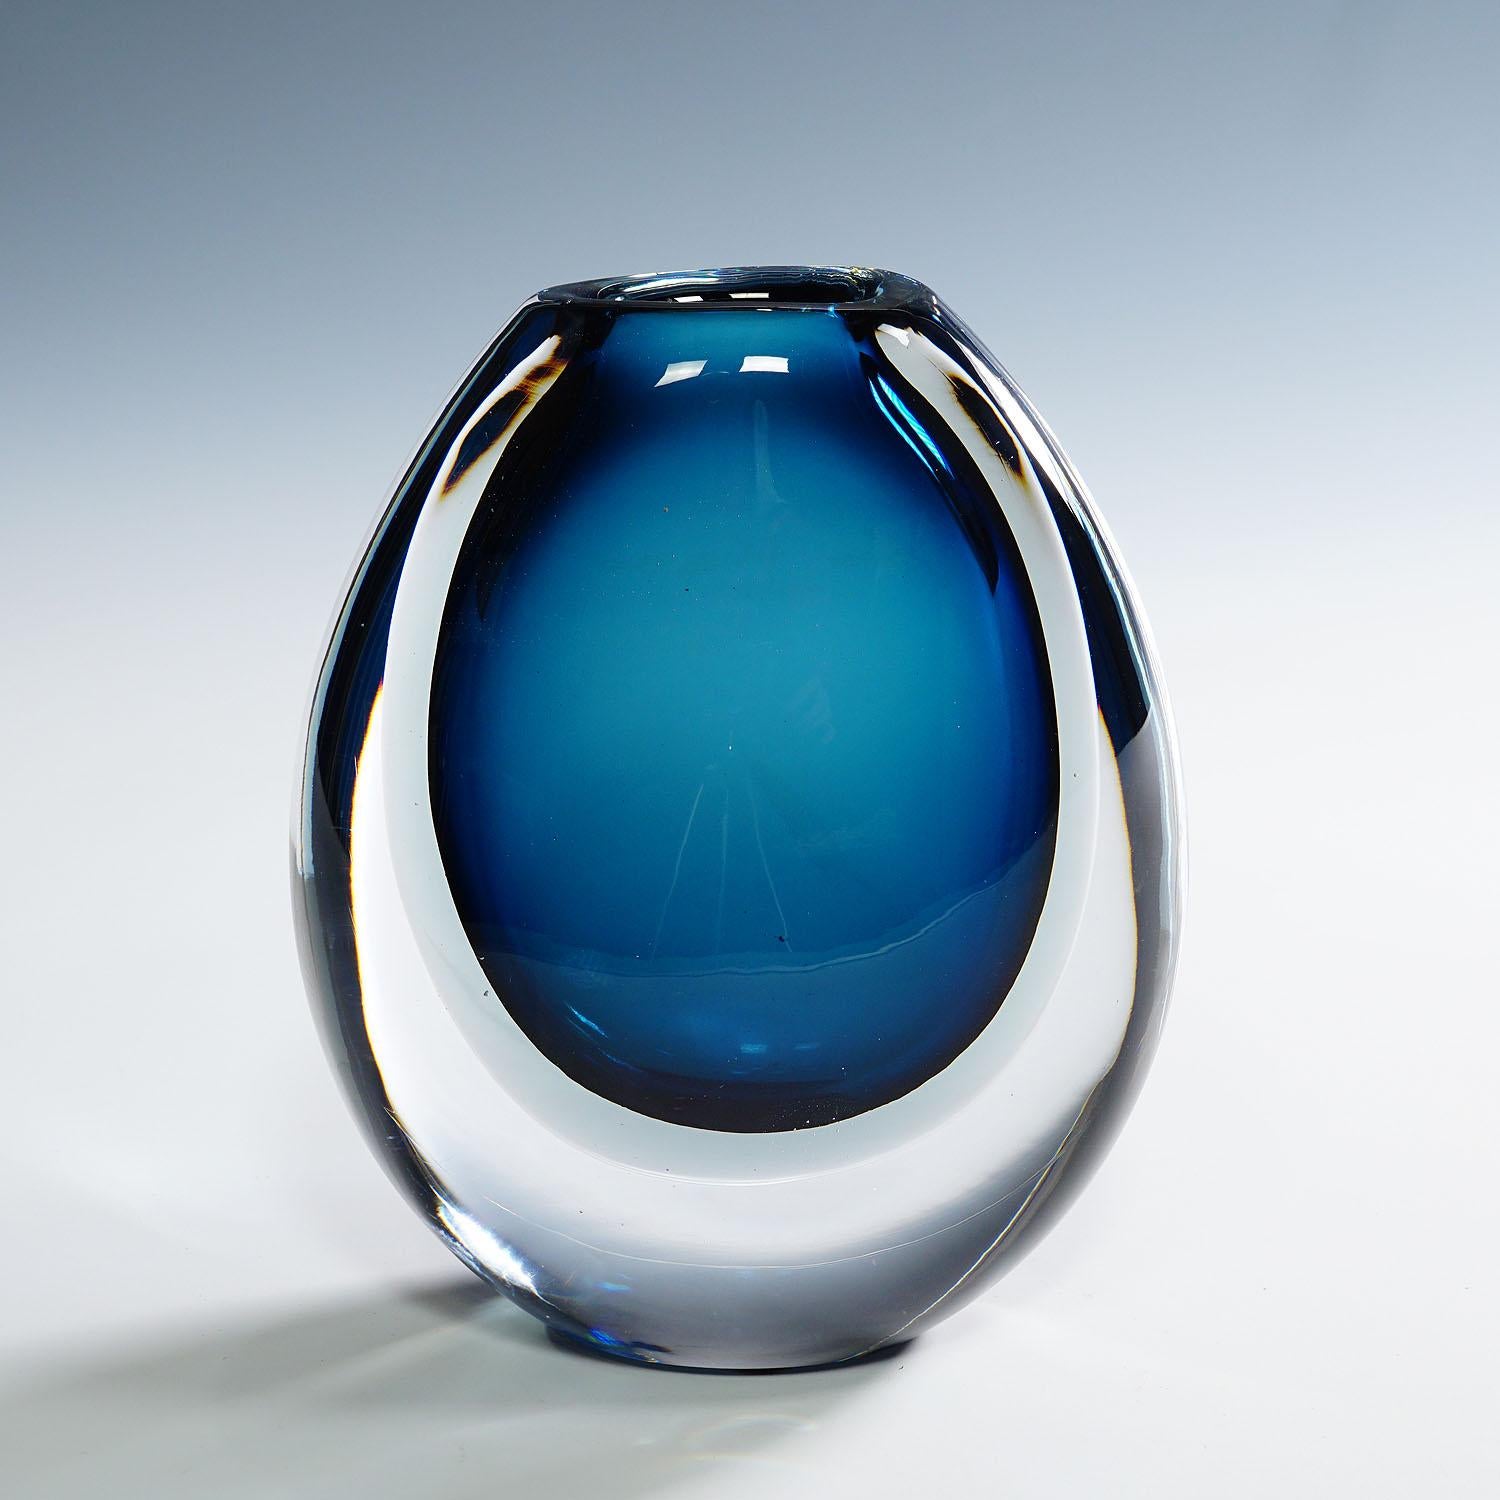 Vase avec couches bleues et grises, Vicke Lindstrand pour Kosta, années 1950

Un vase vintage en verre d'art conçu par Vicke Lindstrand et fabriqué par Kosta Glasbruk vers les années 1950. Le vase est composé de couches de verre bleu et gris et